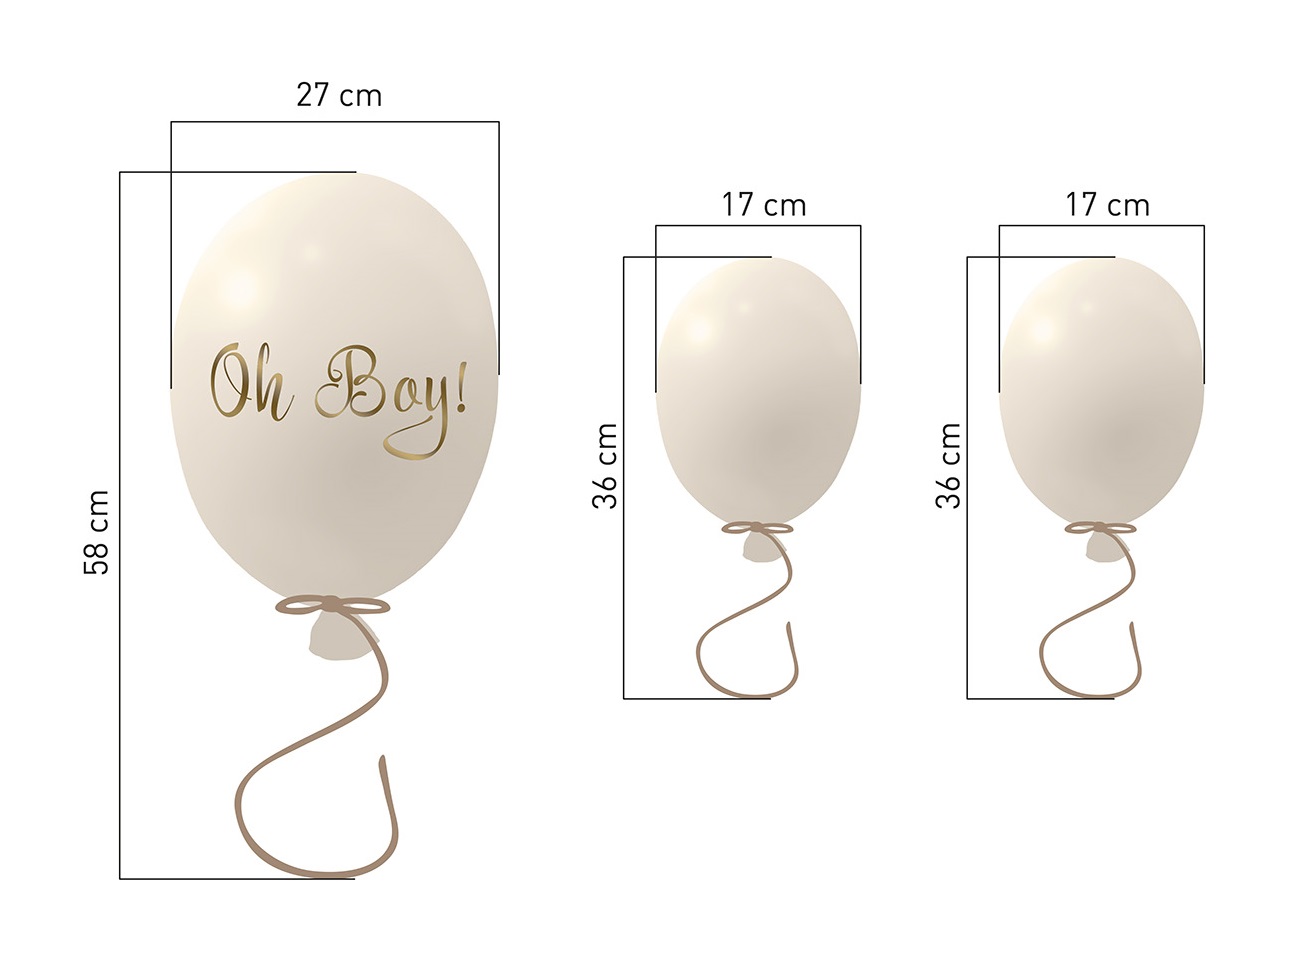 Väggklistermärke partyballonger 3-pack, cream Mått på ballonger